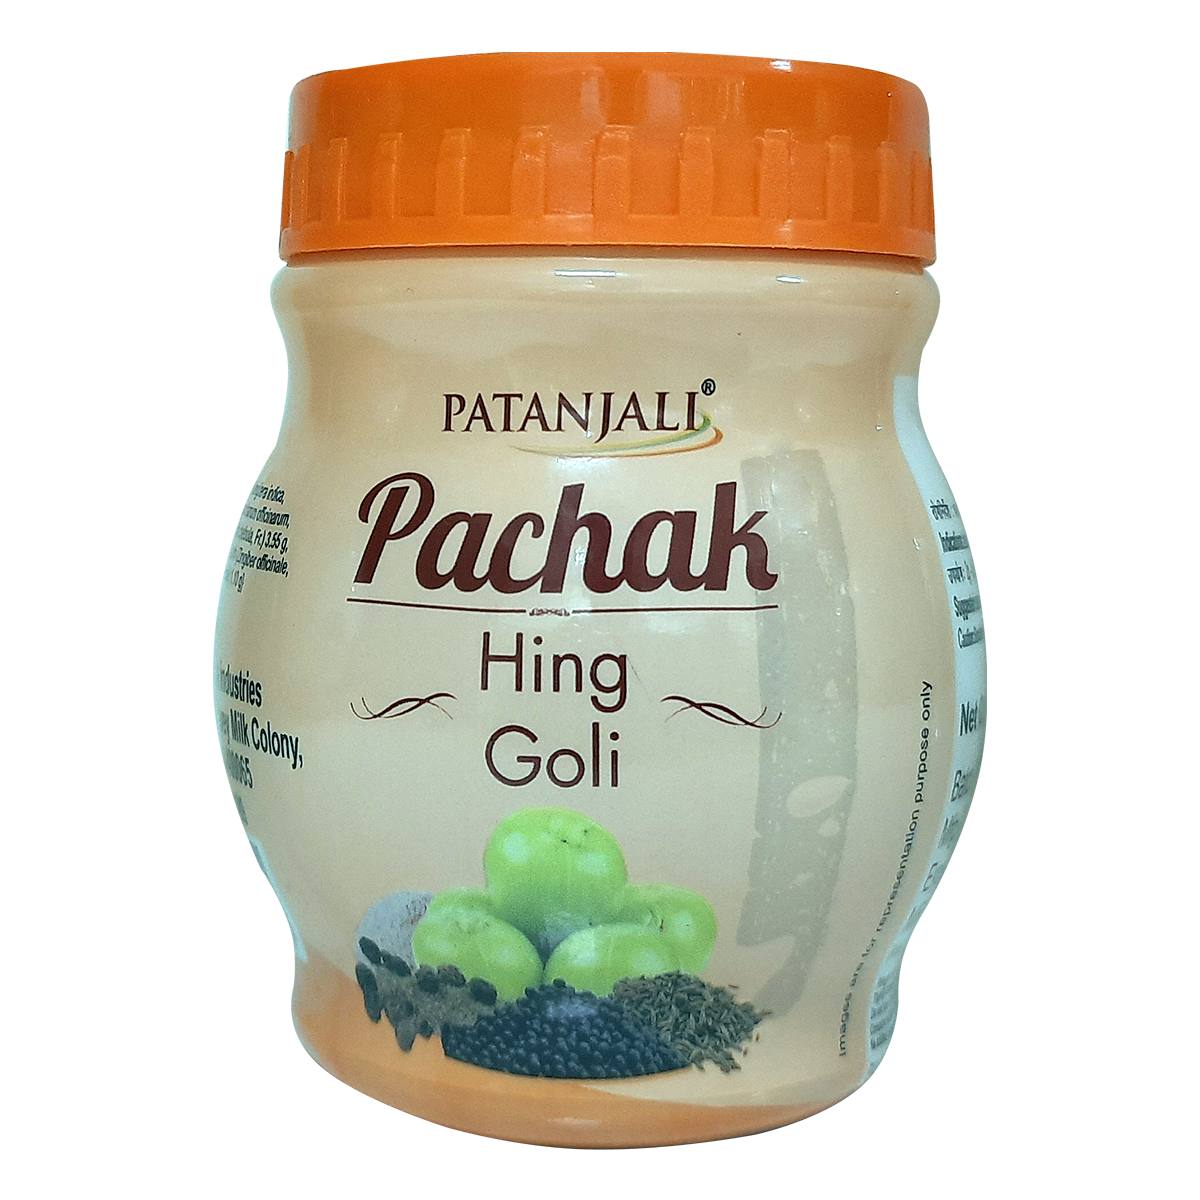 Patanjali Pachak Hing Goli Jar of 100 GM